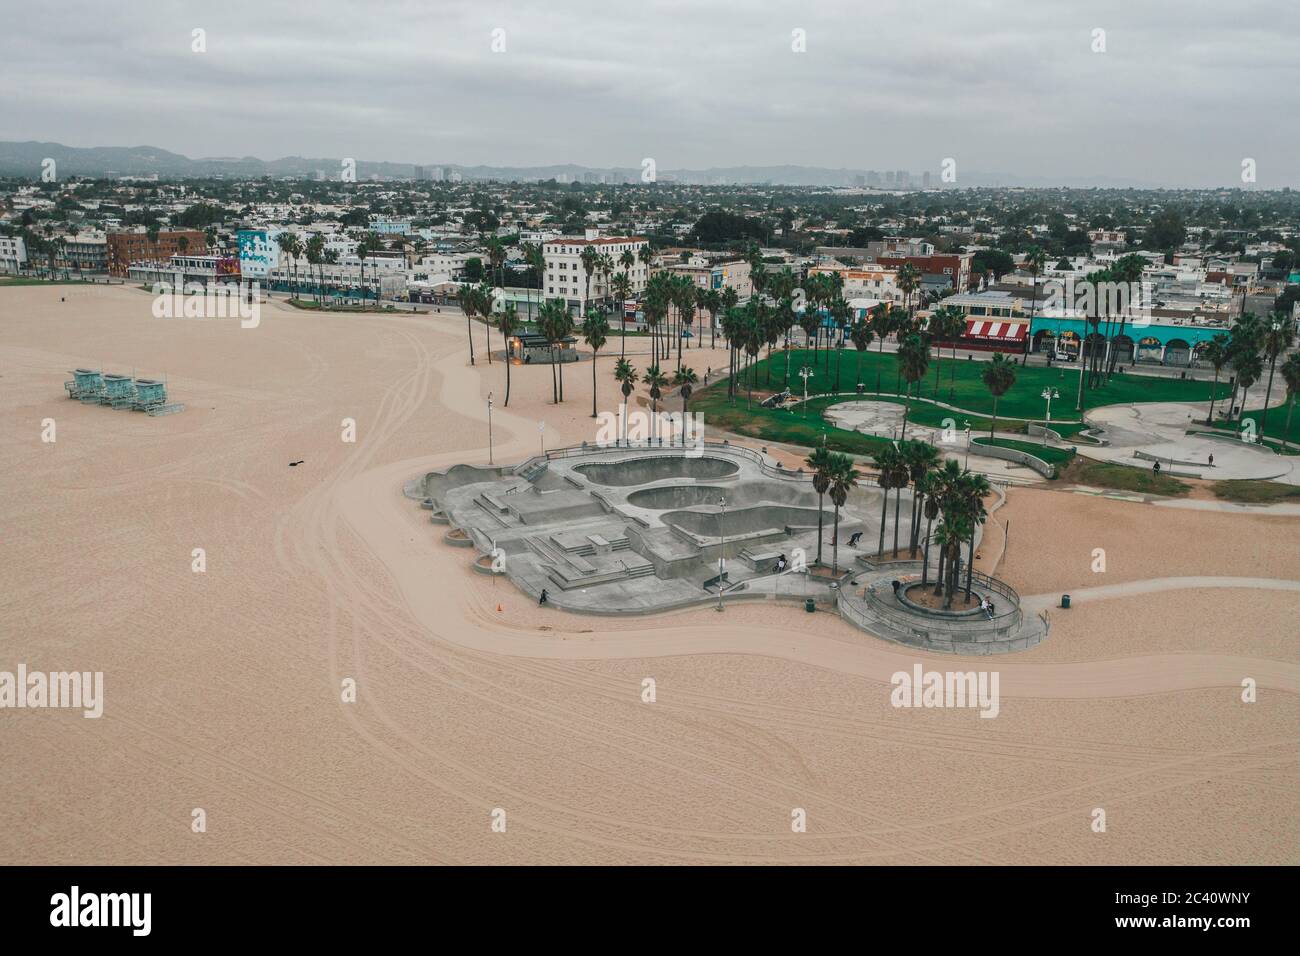 Vista aerea dello Skatepark di Venezia vuoto al mattino senza persone Foto Stock